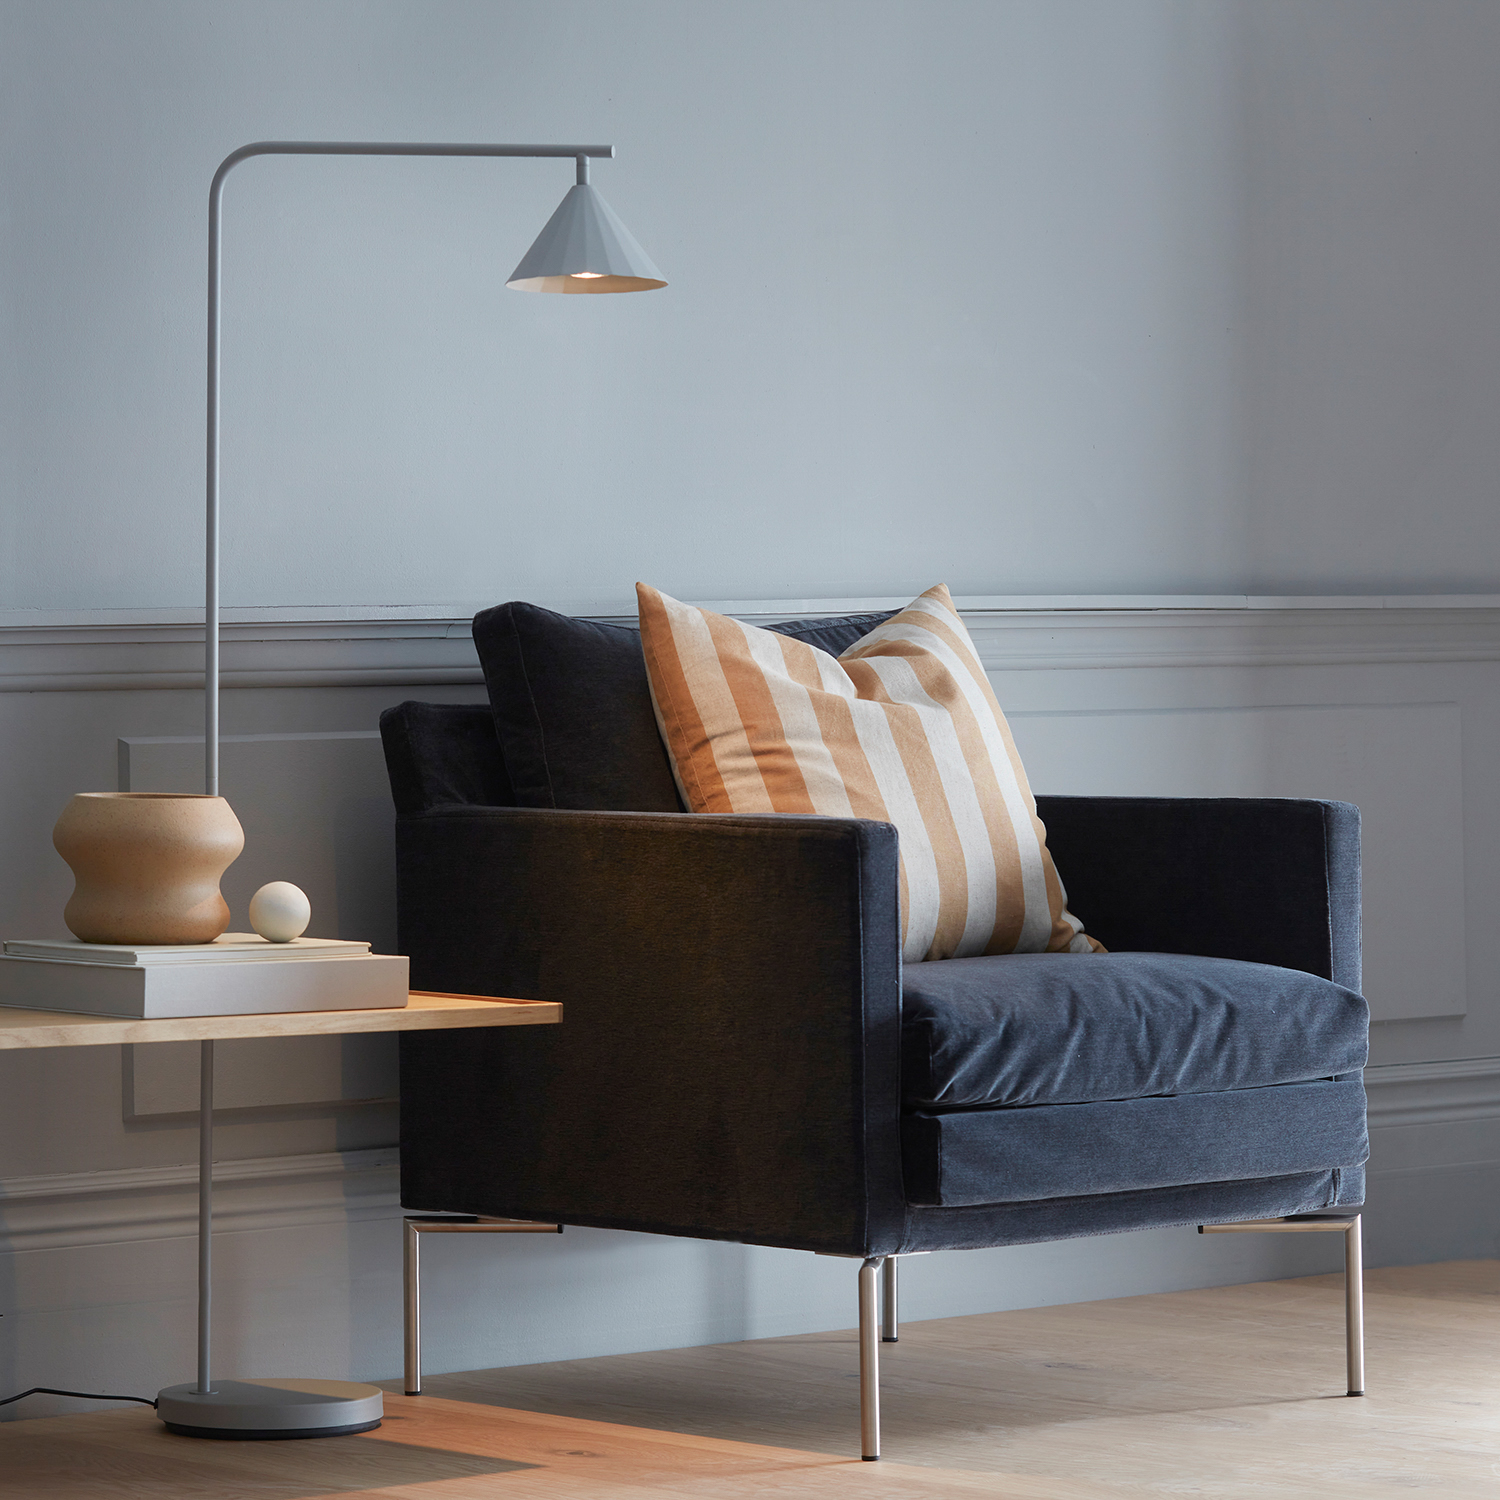 CO Bankeryd RAIN lampadaire sur pied salon scandinave design